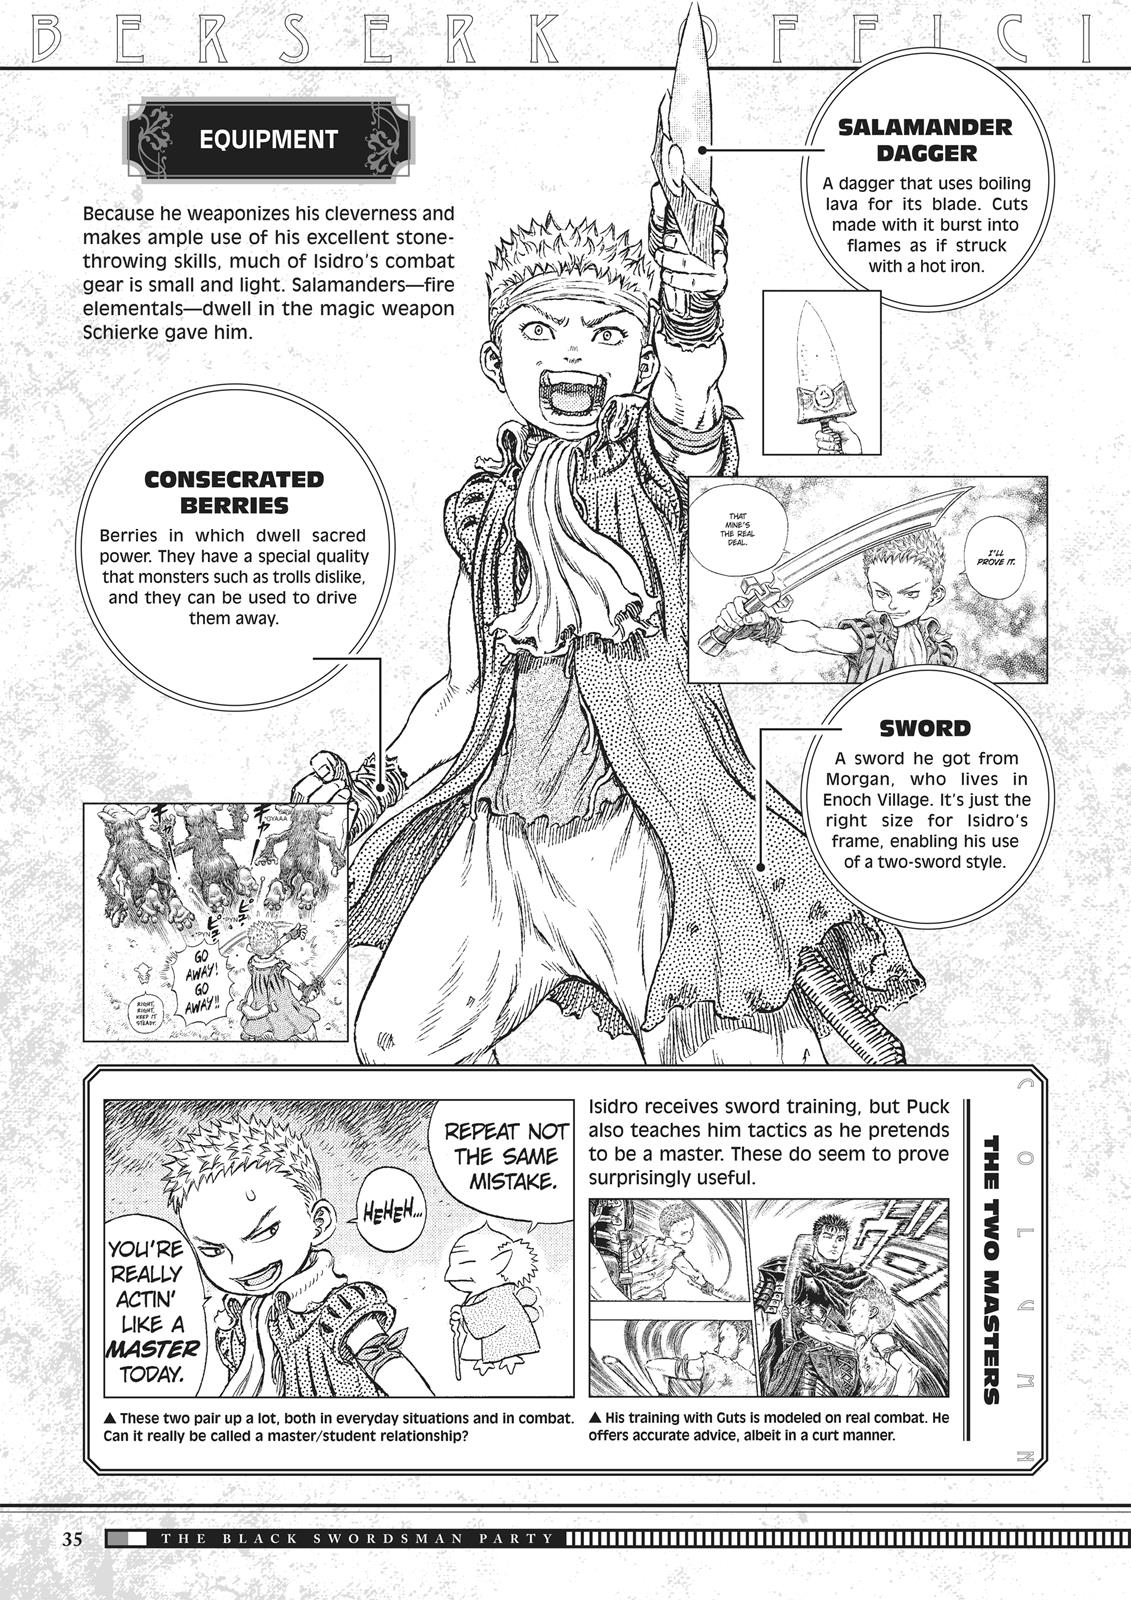 Berserk Manga Chapter 350.5 image 035